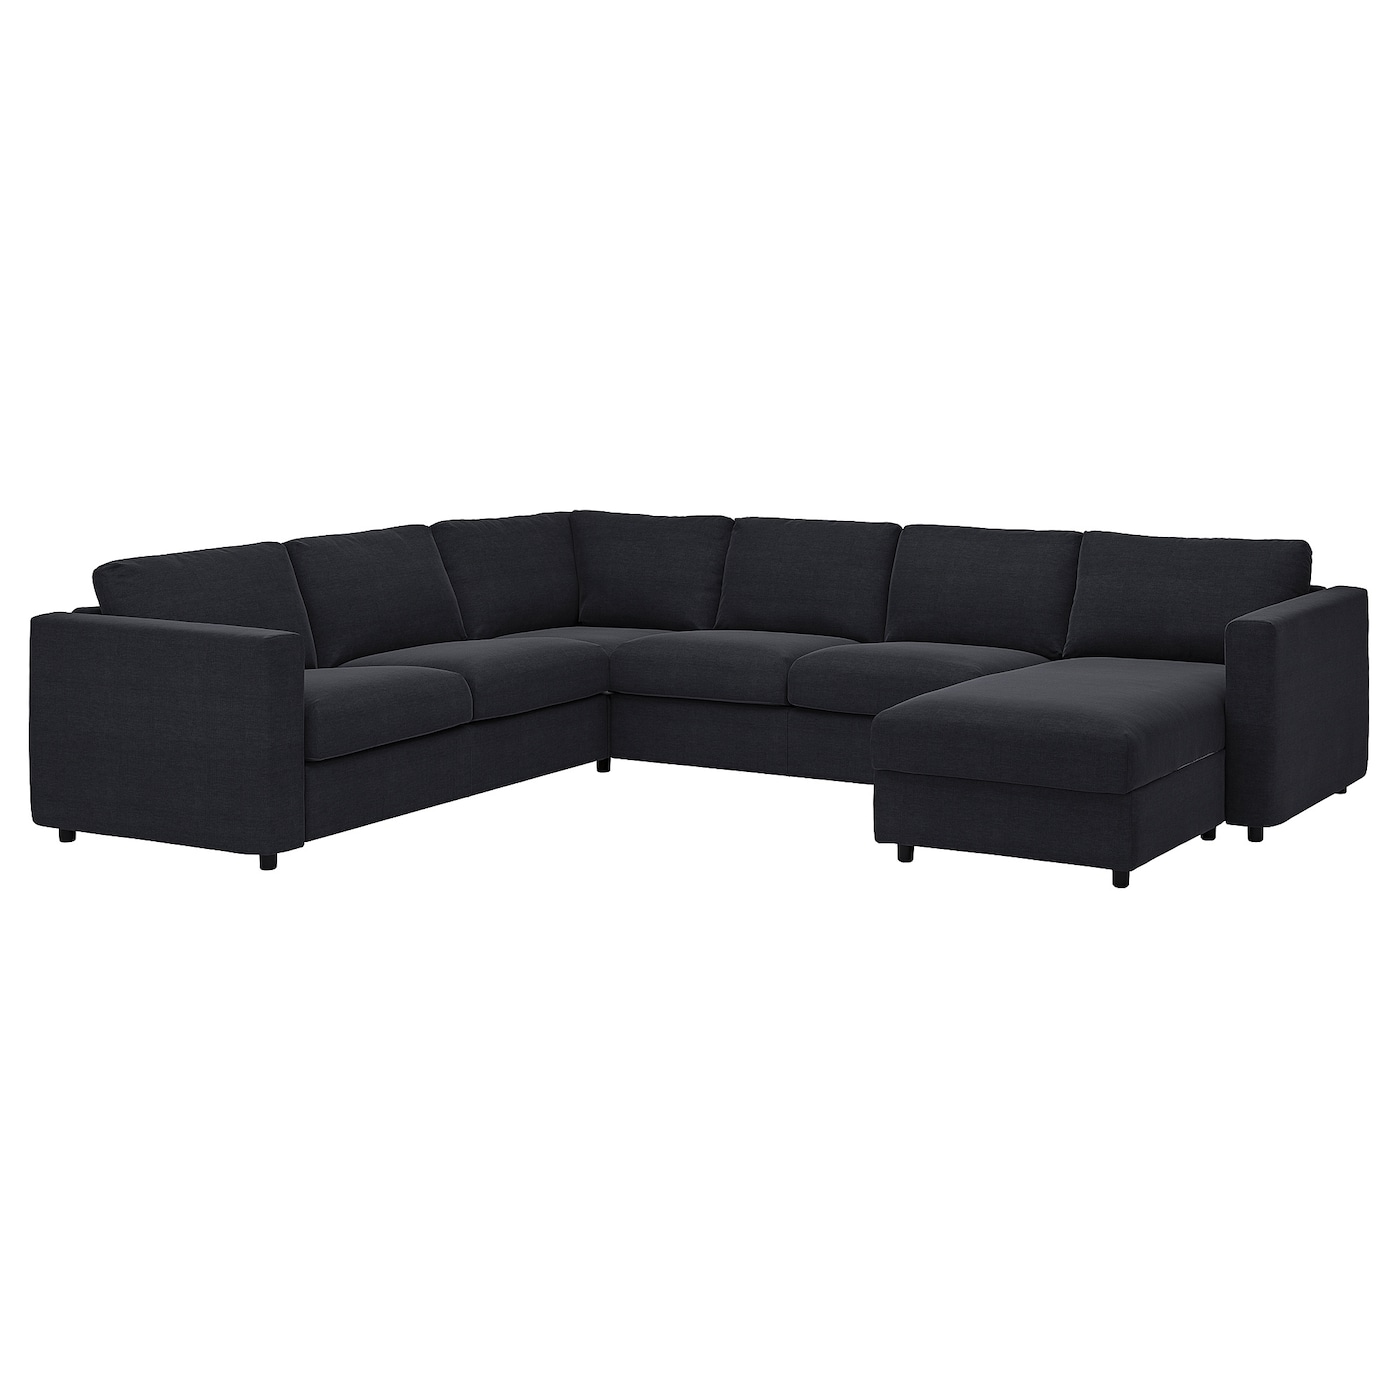 ВИМЛЕ Диван угловой, 5-местный. диван+диван, Saxemara черно-синий VIMLE IKEA диван офисный угловой стандартный